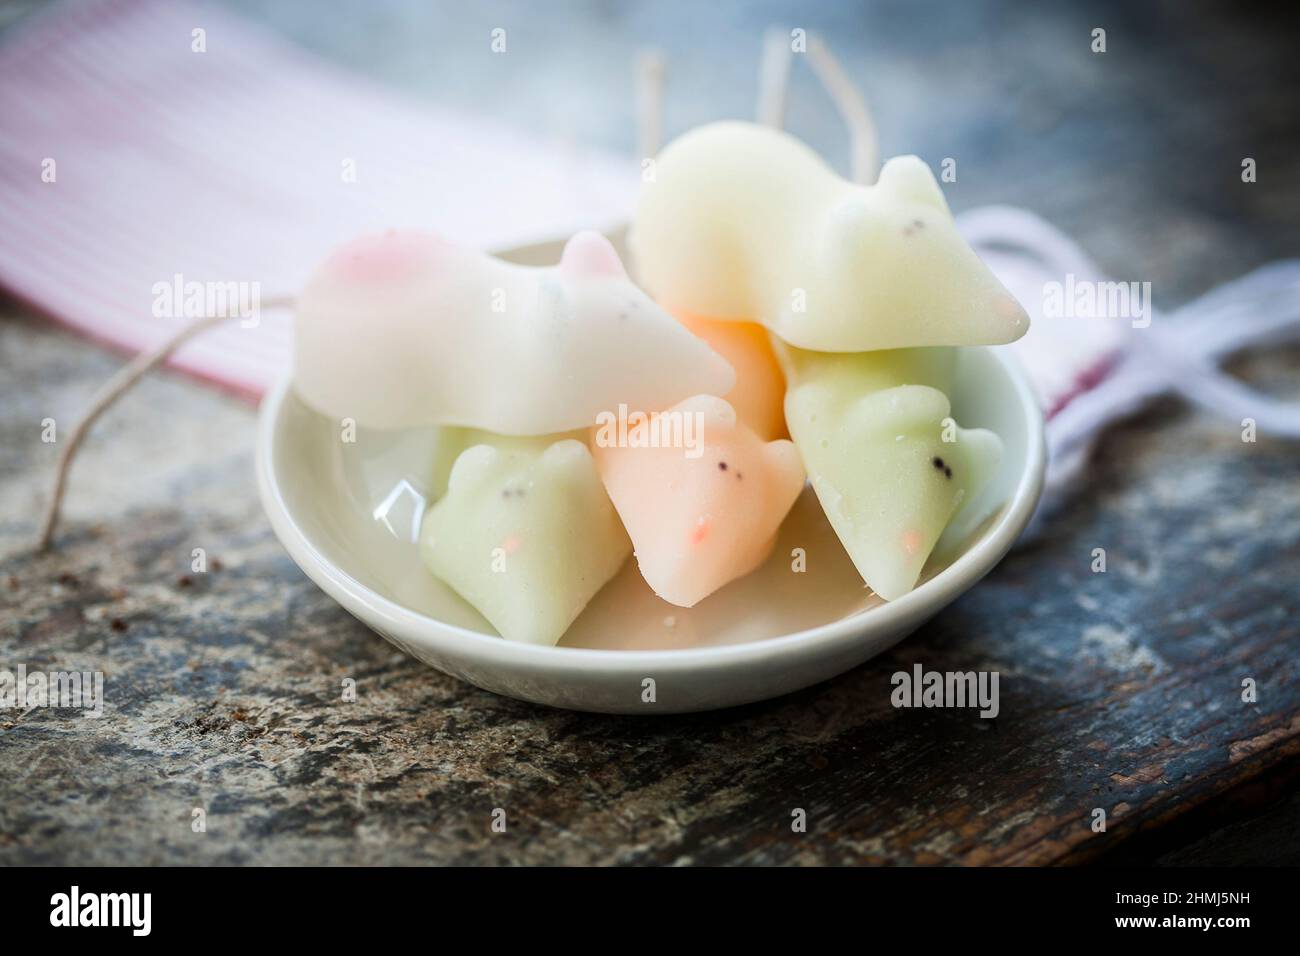 Sugar mice confection for sale in a delicatessen Stock Photo